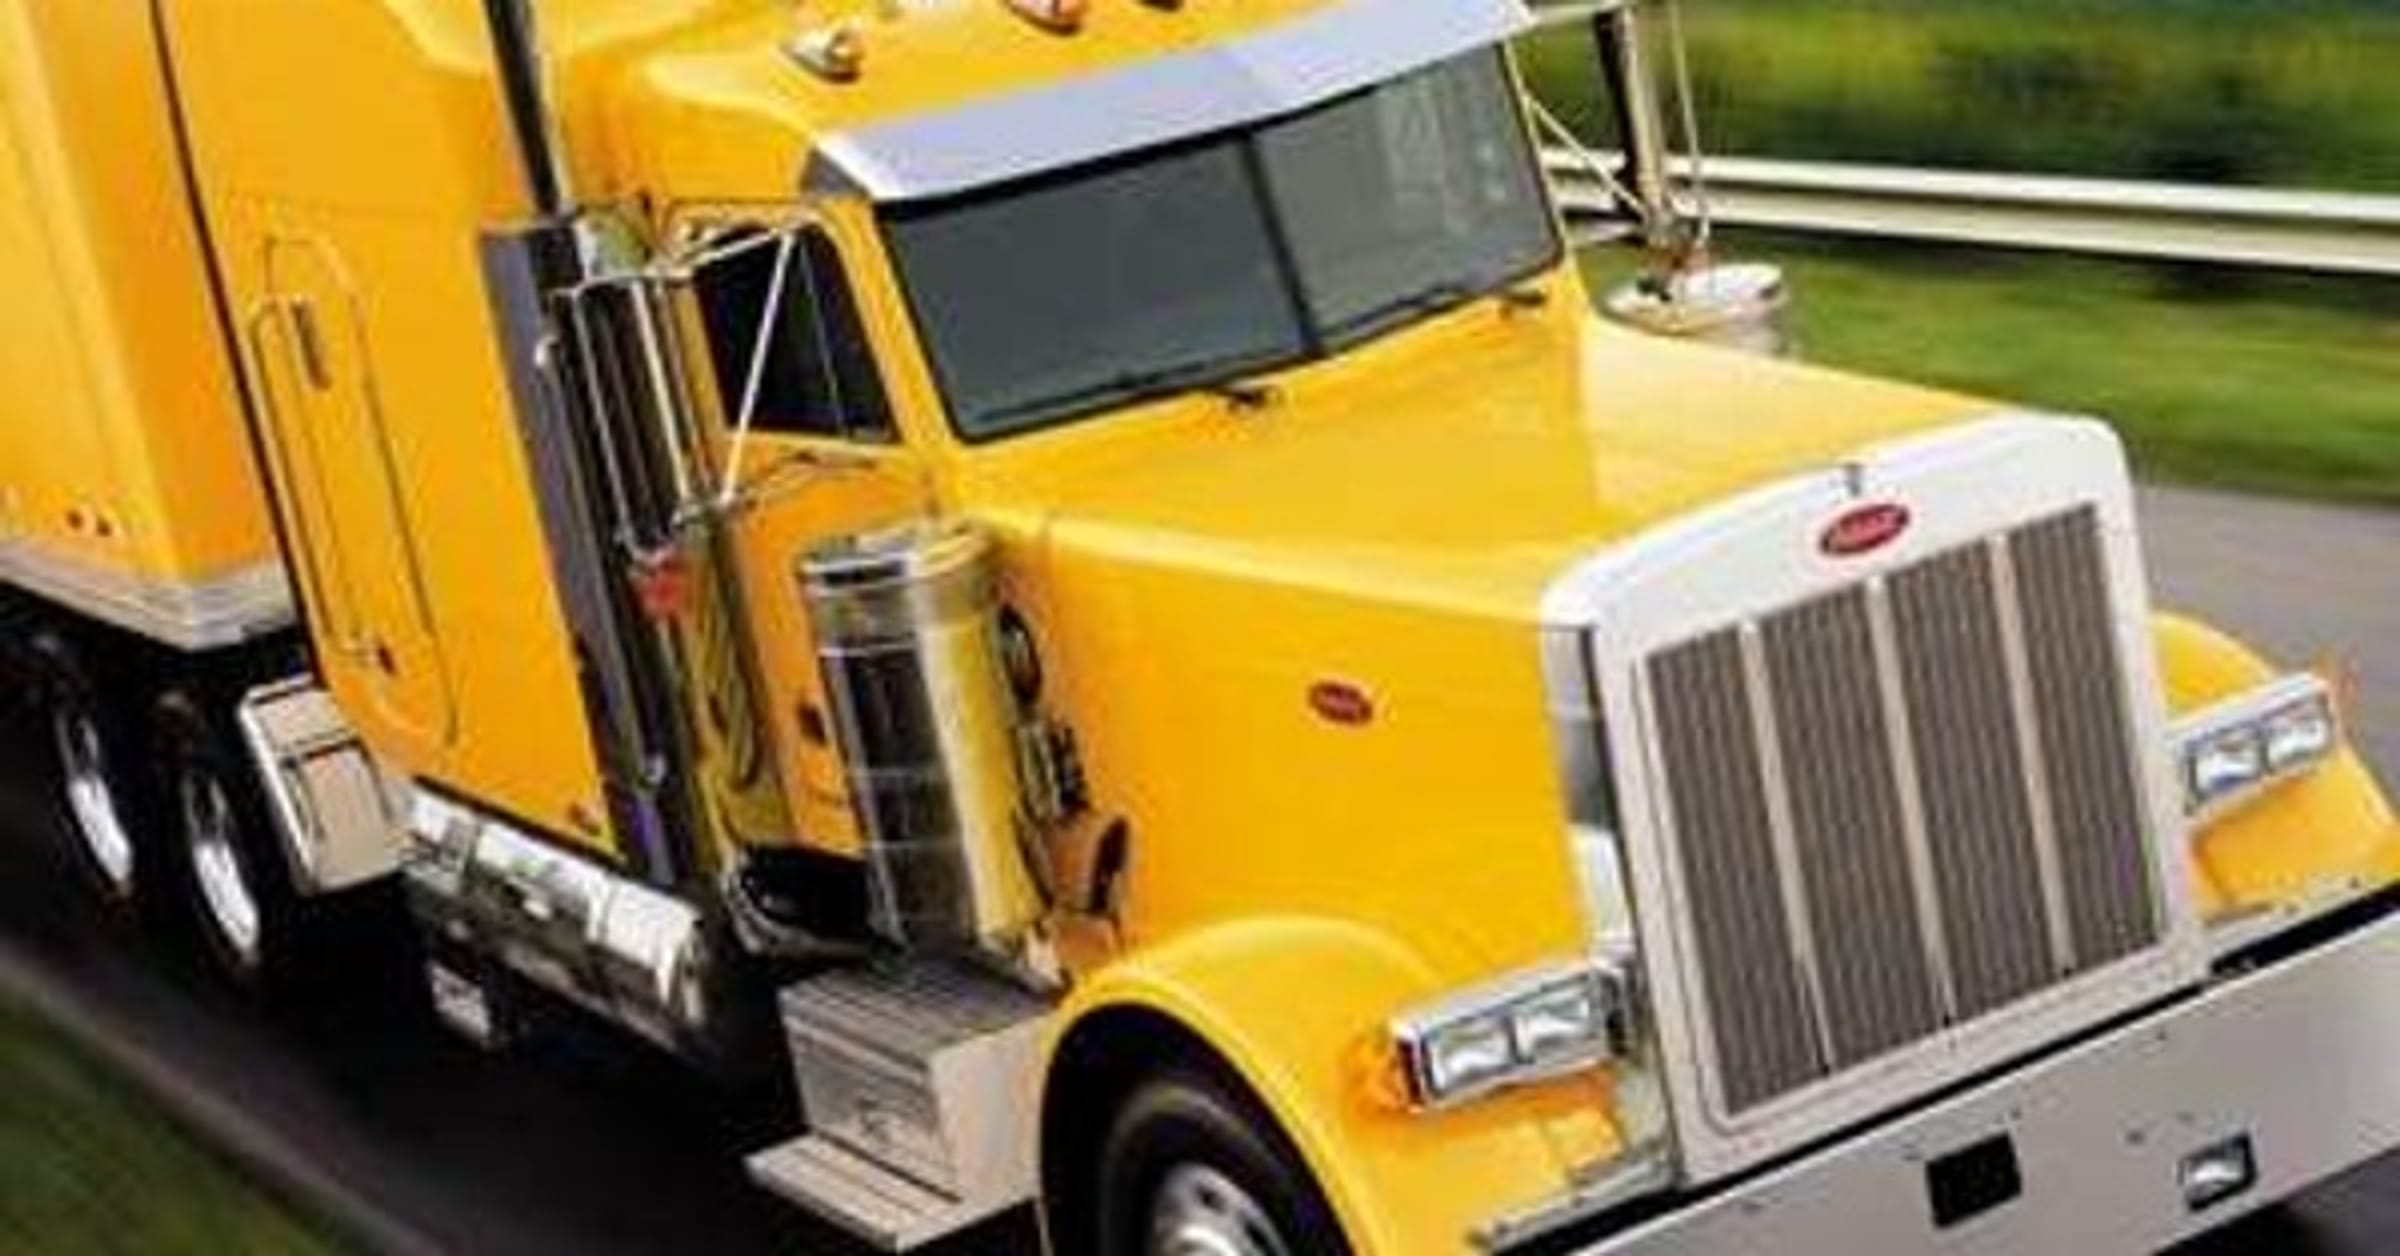 Truck Companies List of Top Truck Firms